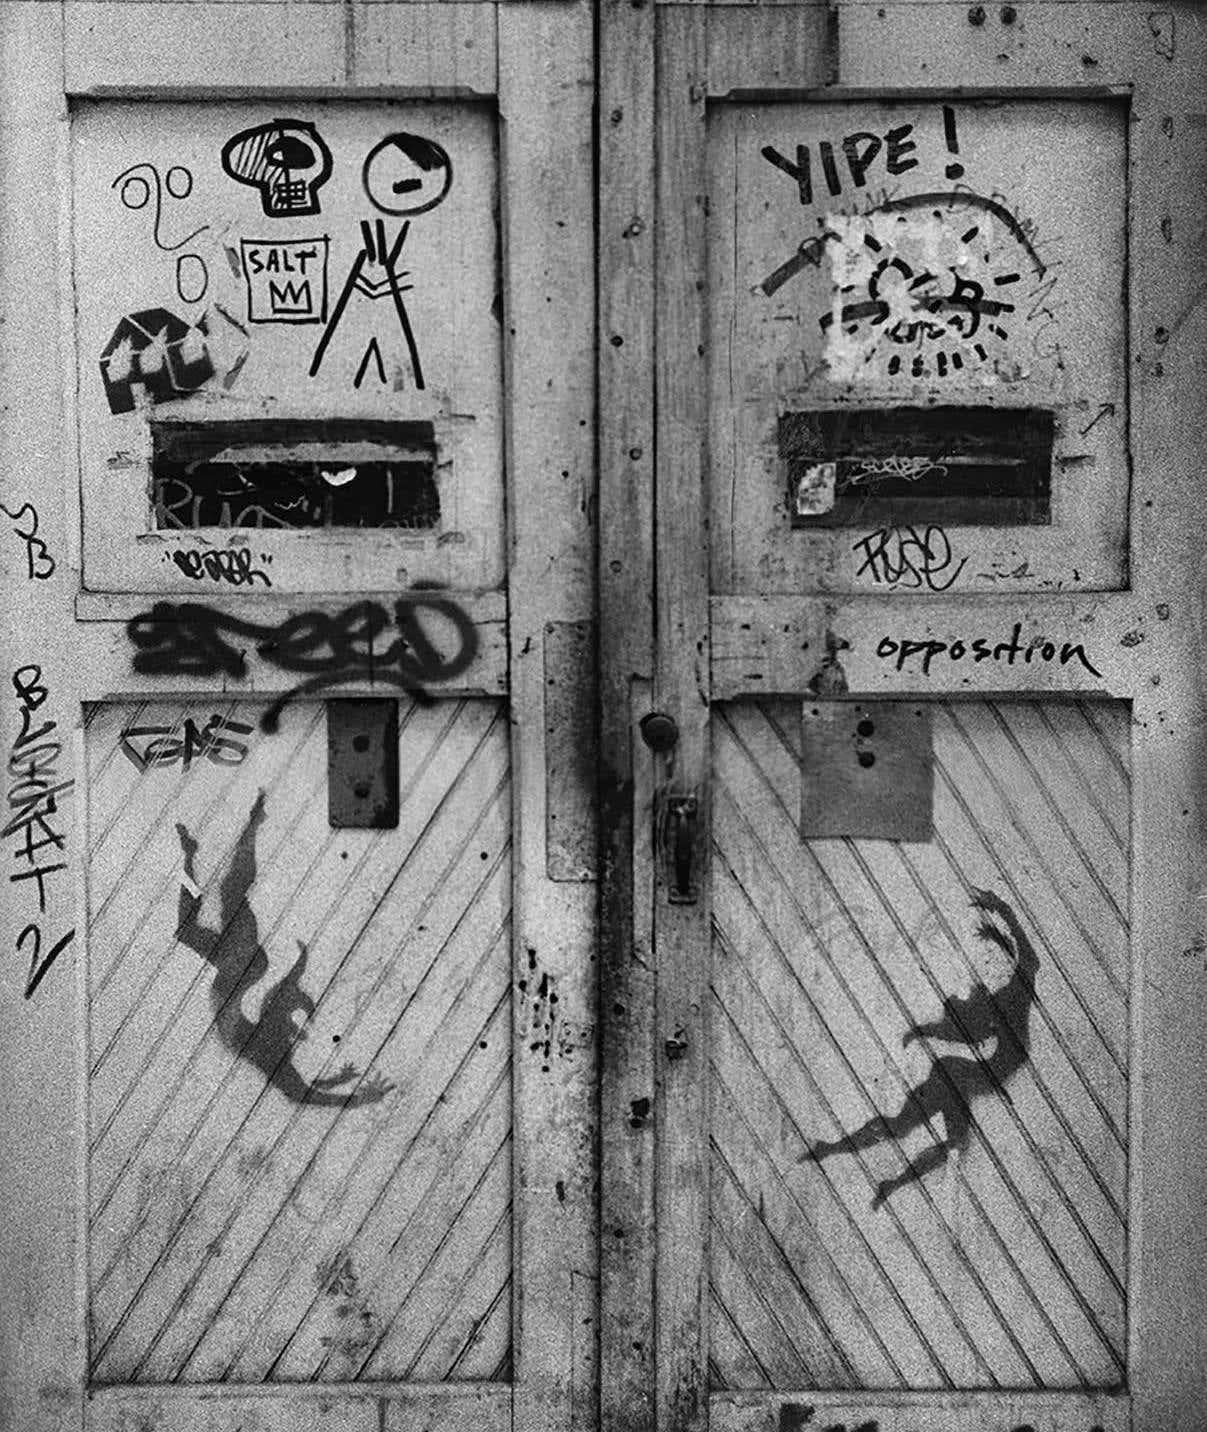 Basquiat Keith Haring NY Graffiti Photo 1980 (SAMO)  - Gray Black and White Photograph by Fernando Natalici